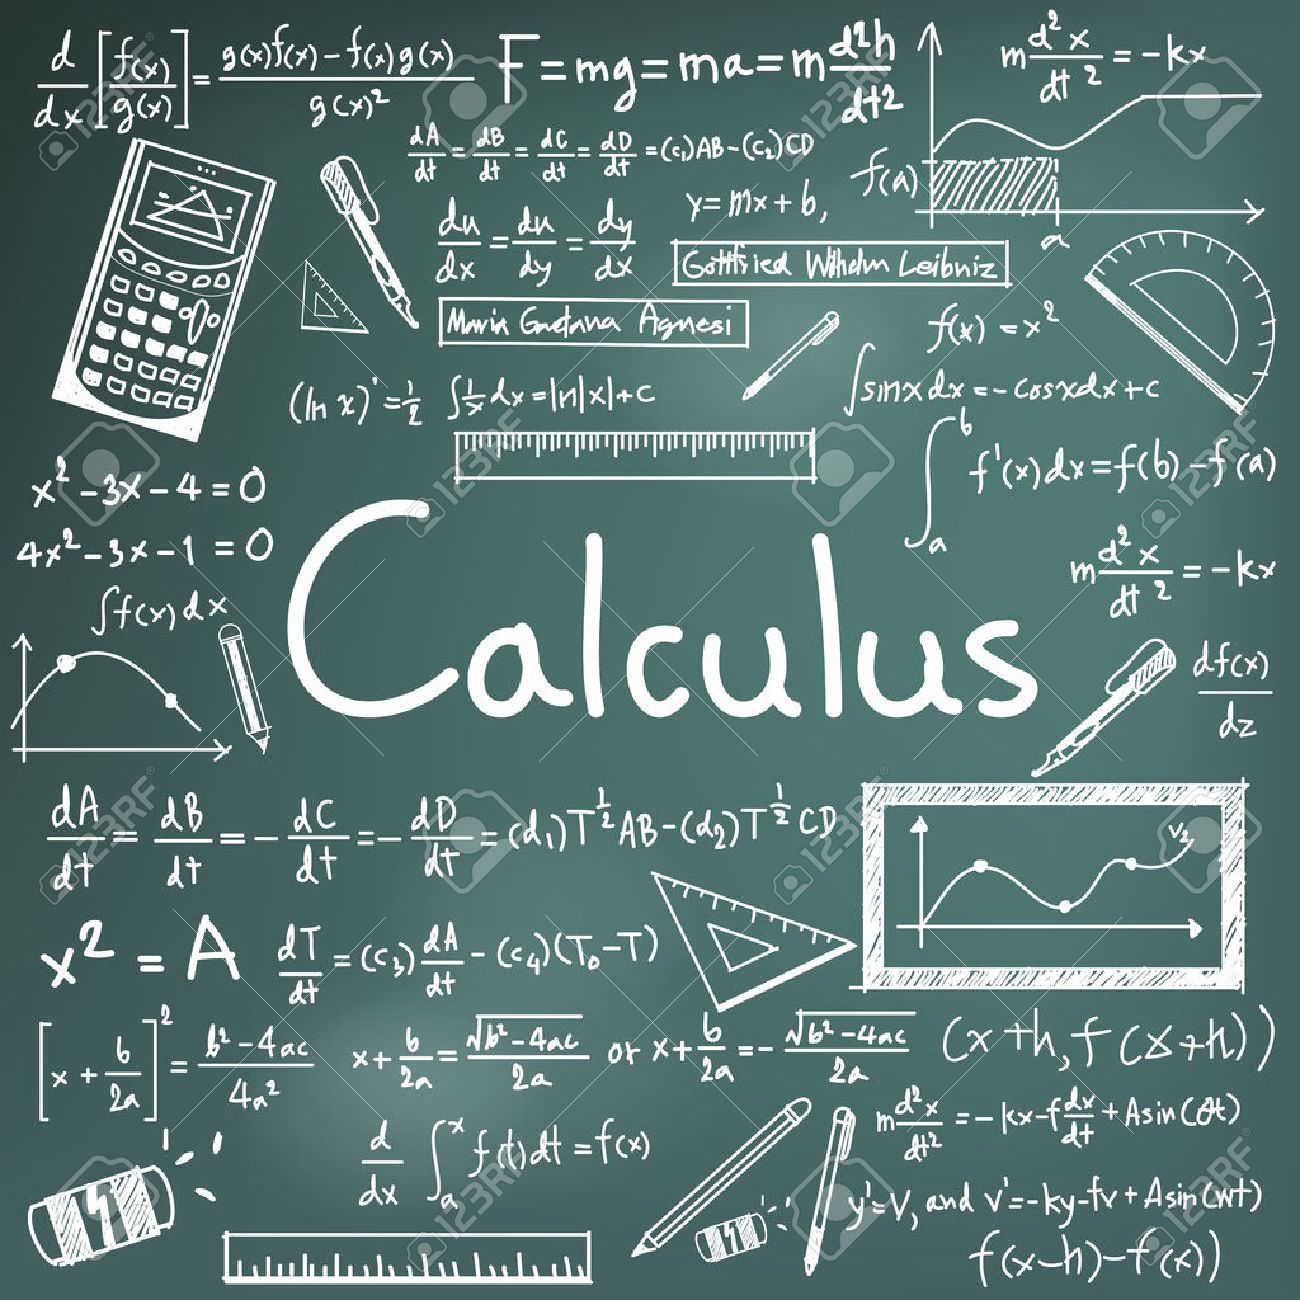 Kalkulus II Genap 2021/2022